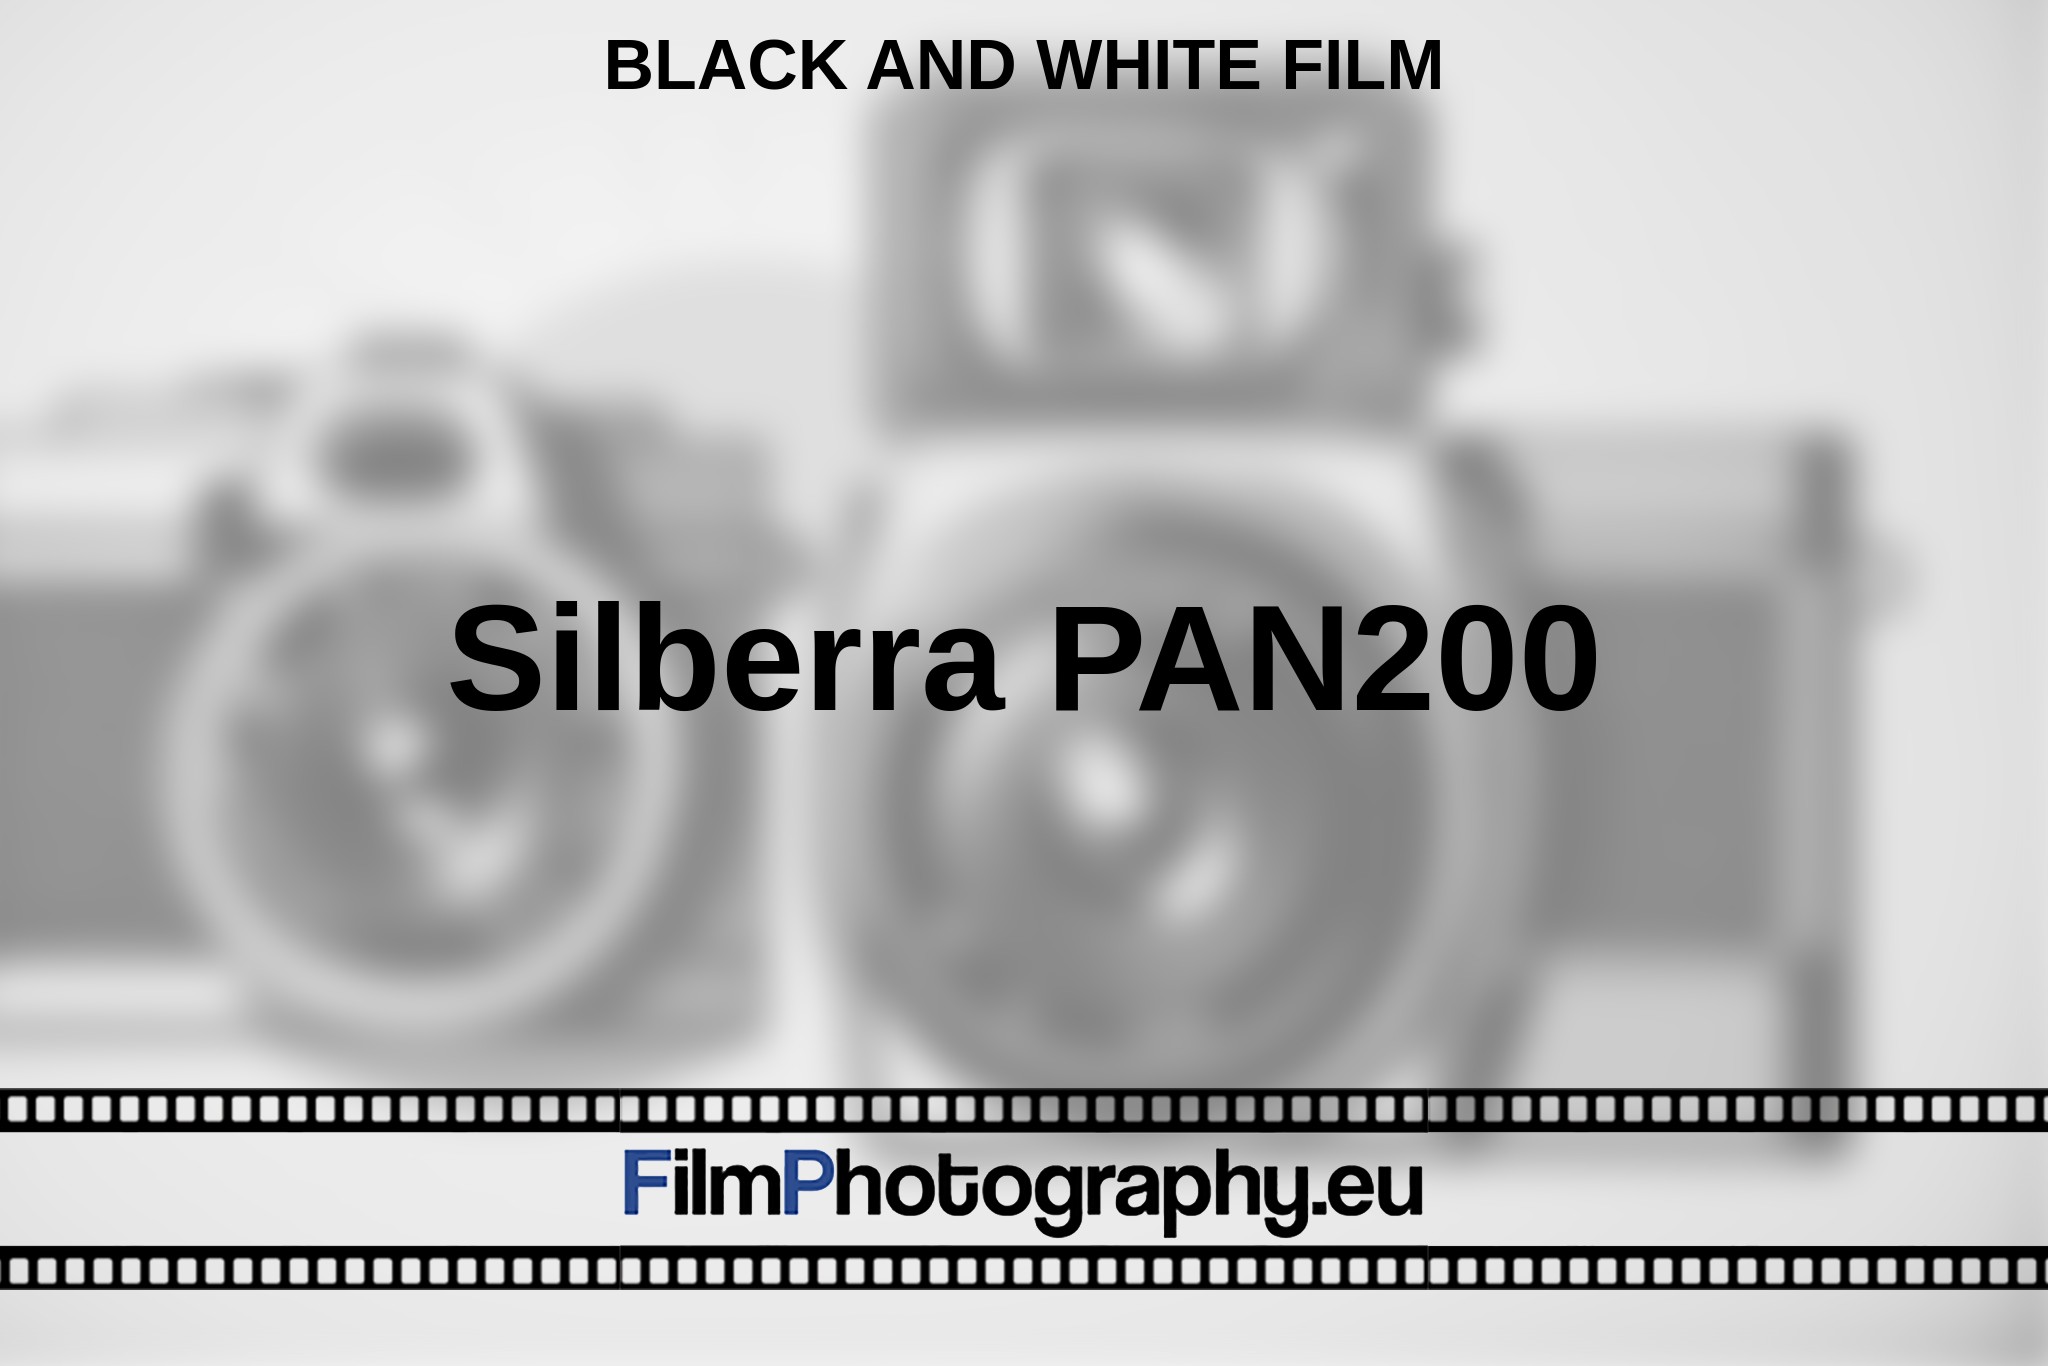 silberra-pan200-black-and-white-film-en-bnv.jpg